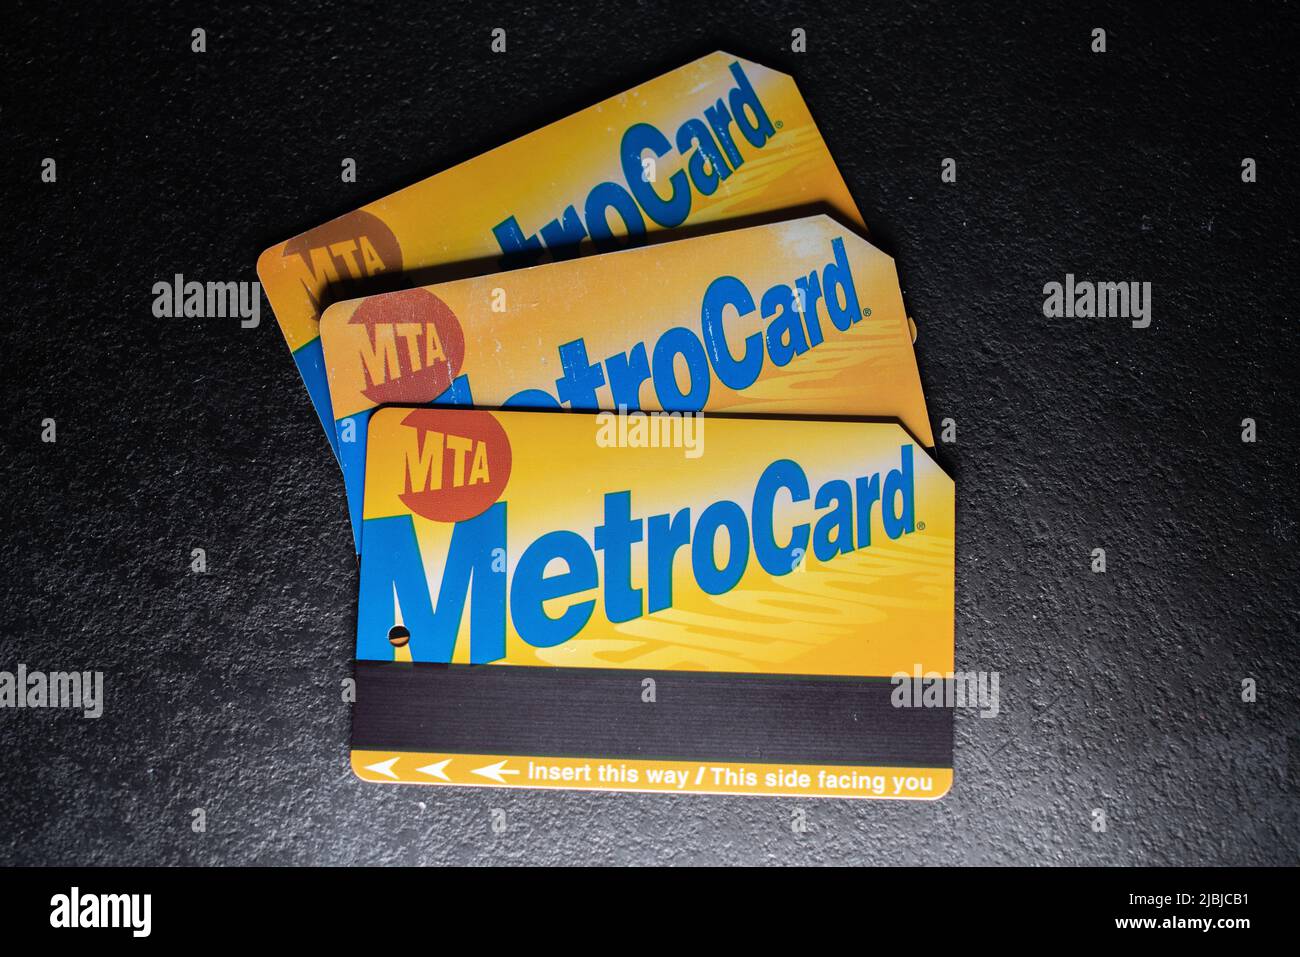 Manhattan, New York/Etats-Unis - 26 mars. 2021: MTA Metro Card sur fond sombre, billet pour les transports en commun à New York. Banque D'Images